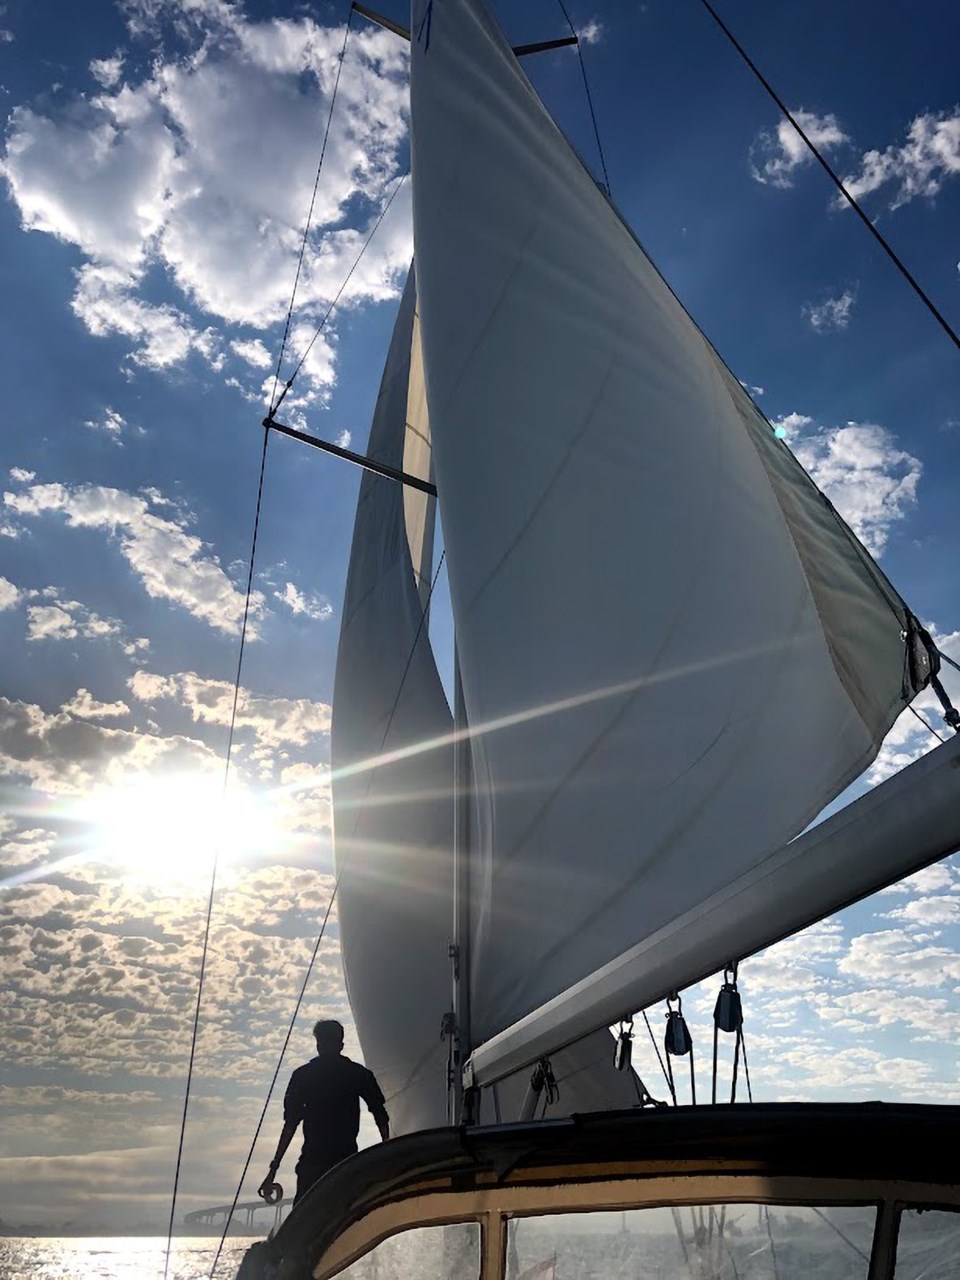 Good Morning photo sail 